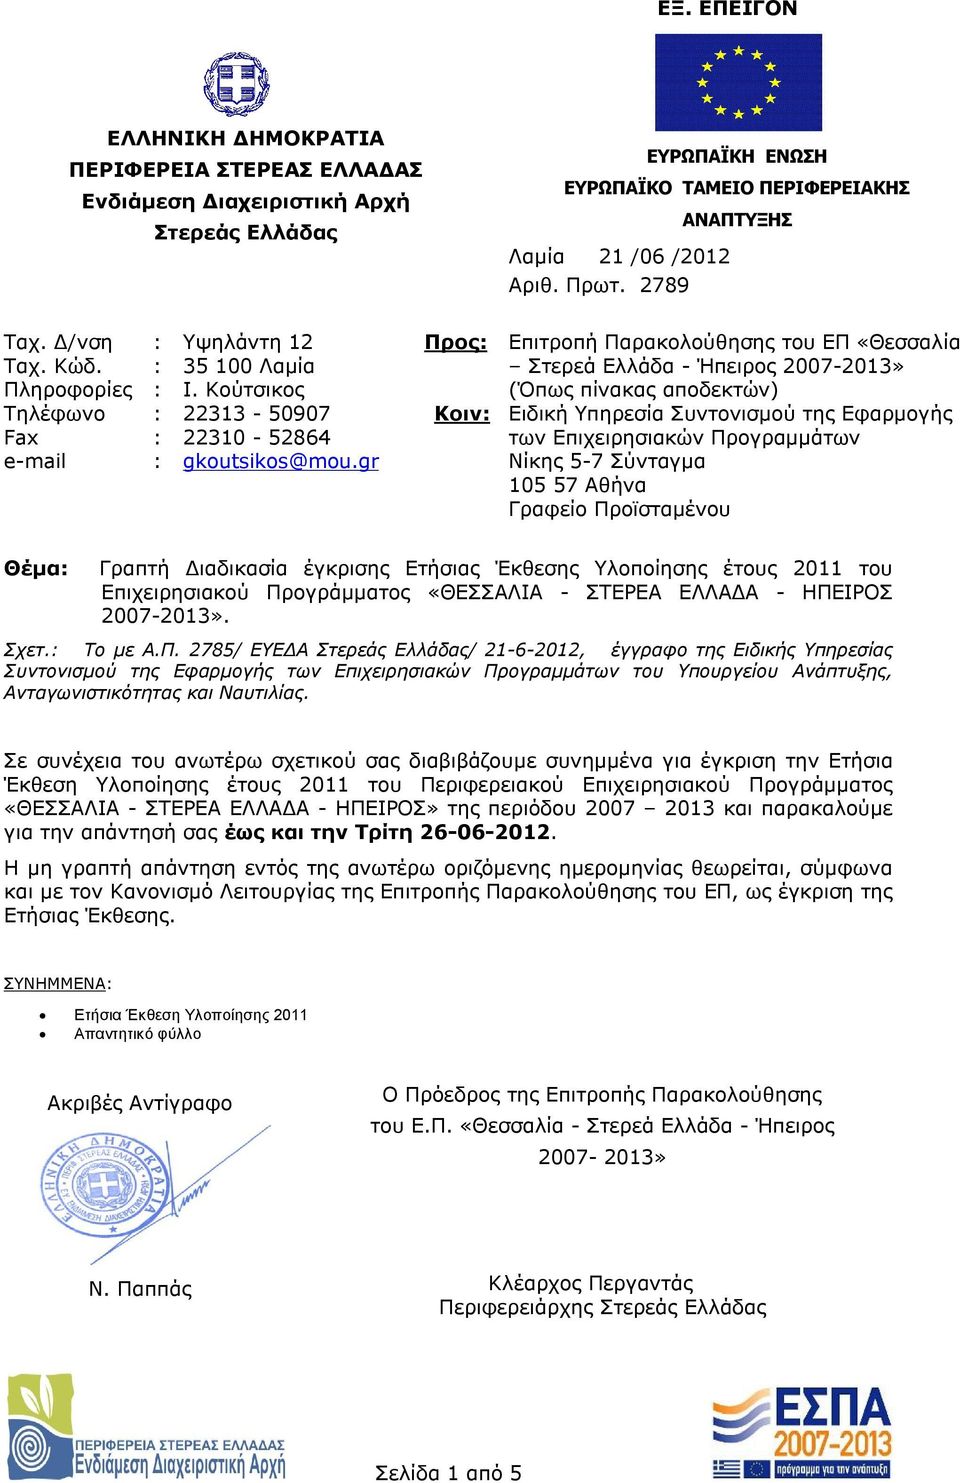 Κούτσικος (Όπως πίνακας αποδεκτών) Τηλέφωνο : 22313-50907 Κοιν: Ειδική Υπηρεσία Συντονισμού της Εφαρμογής Fax : 22310-52864 των Επιχειρησιακών Προγραμμάτων e-mail : gkoutsikos@mou.